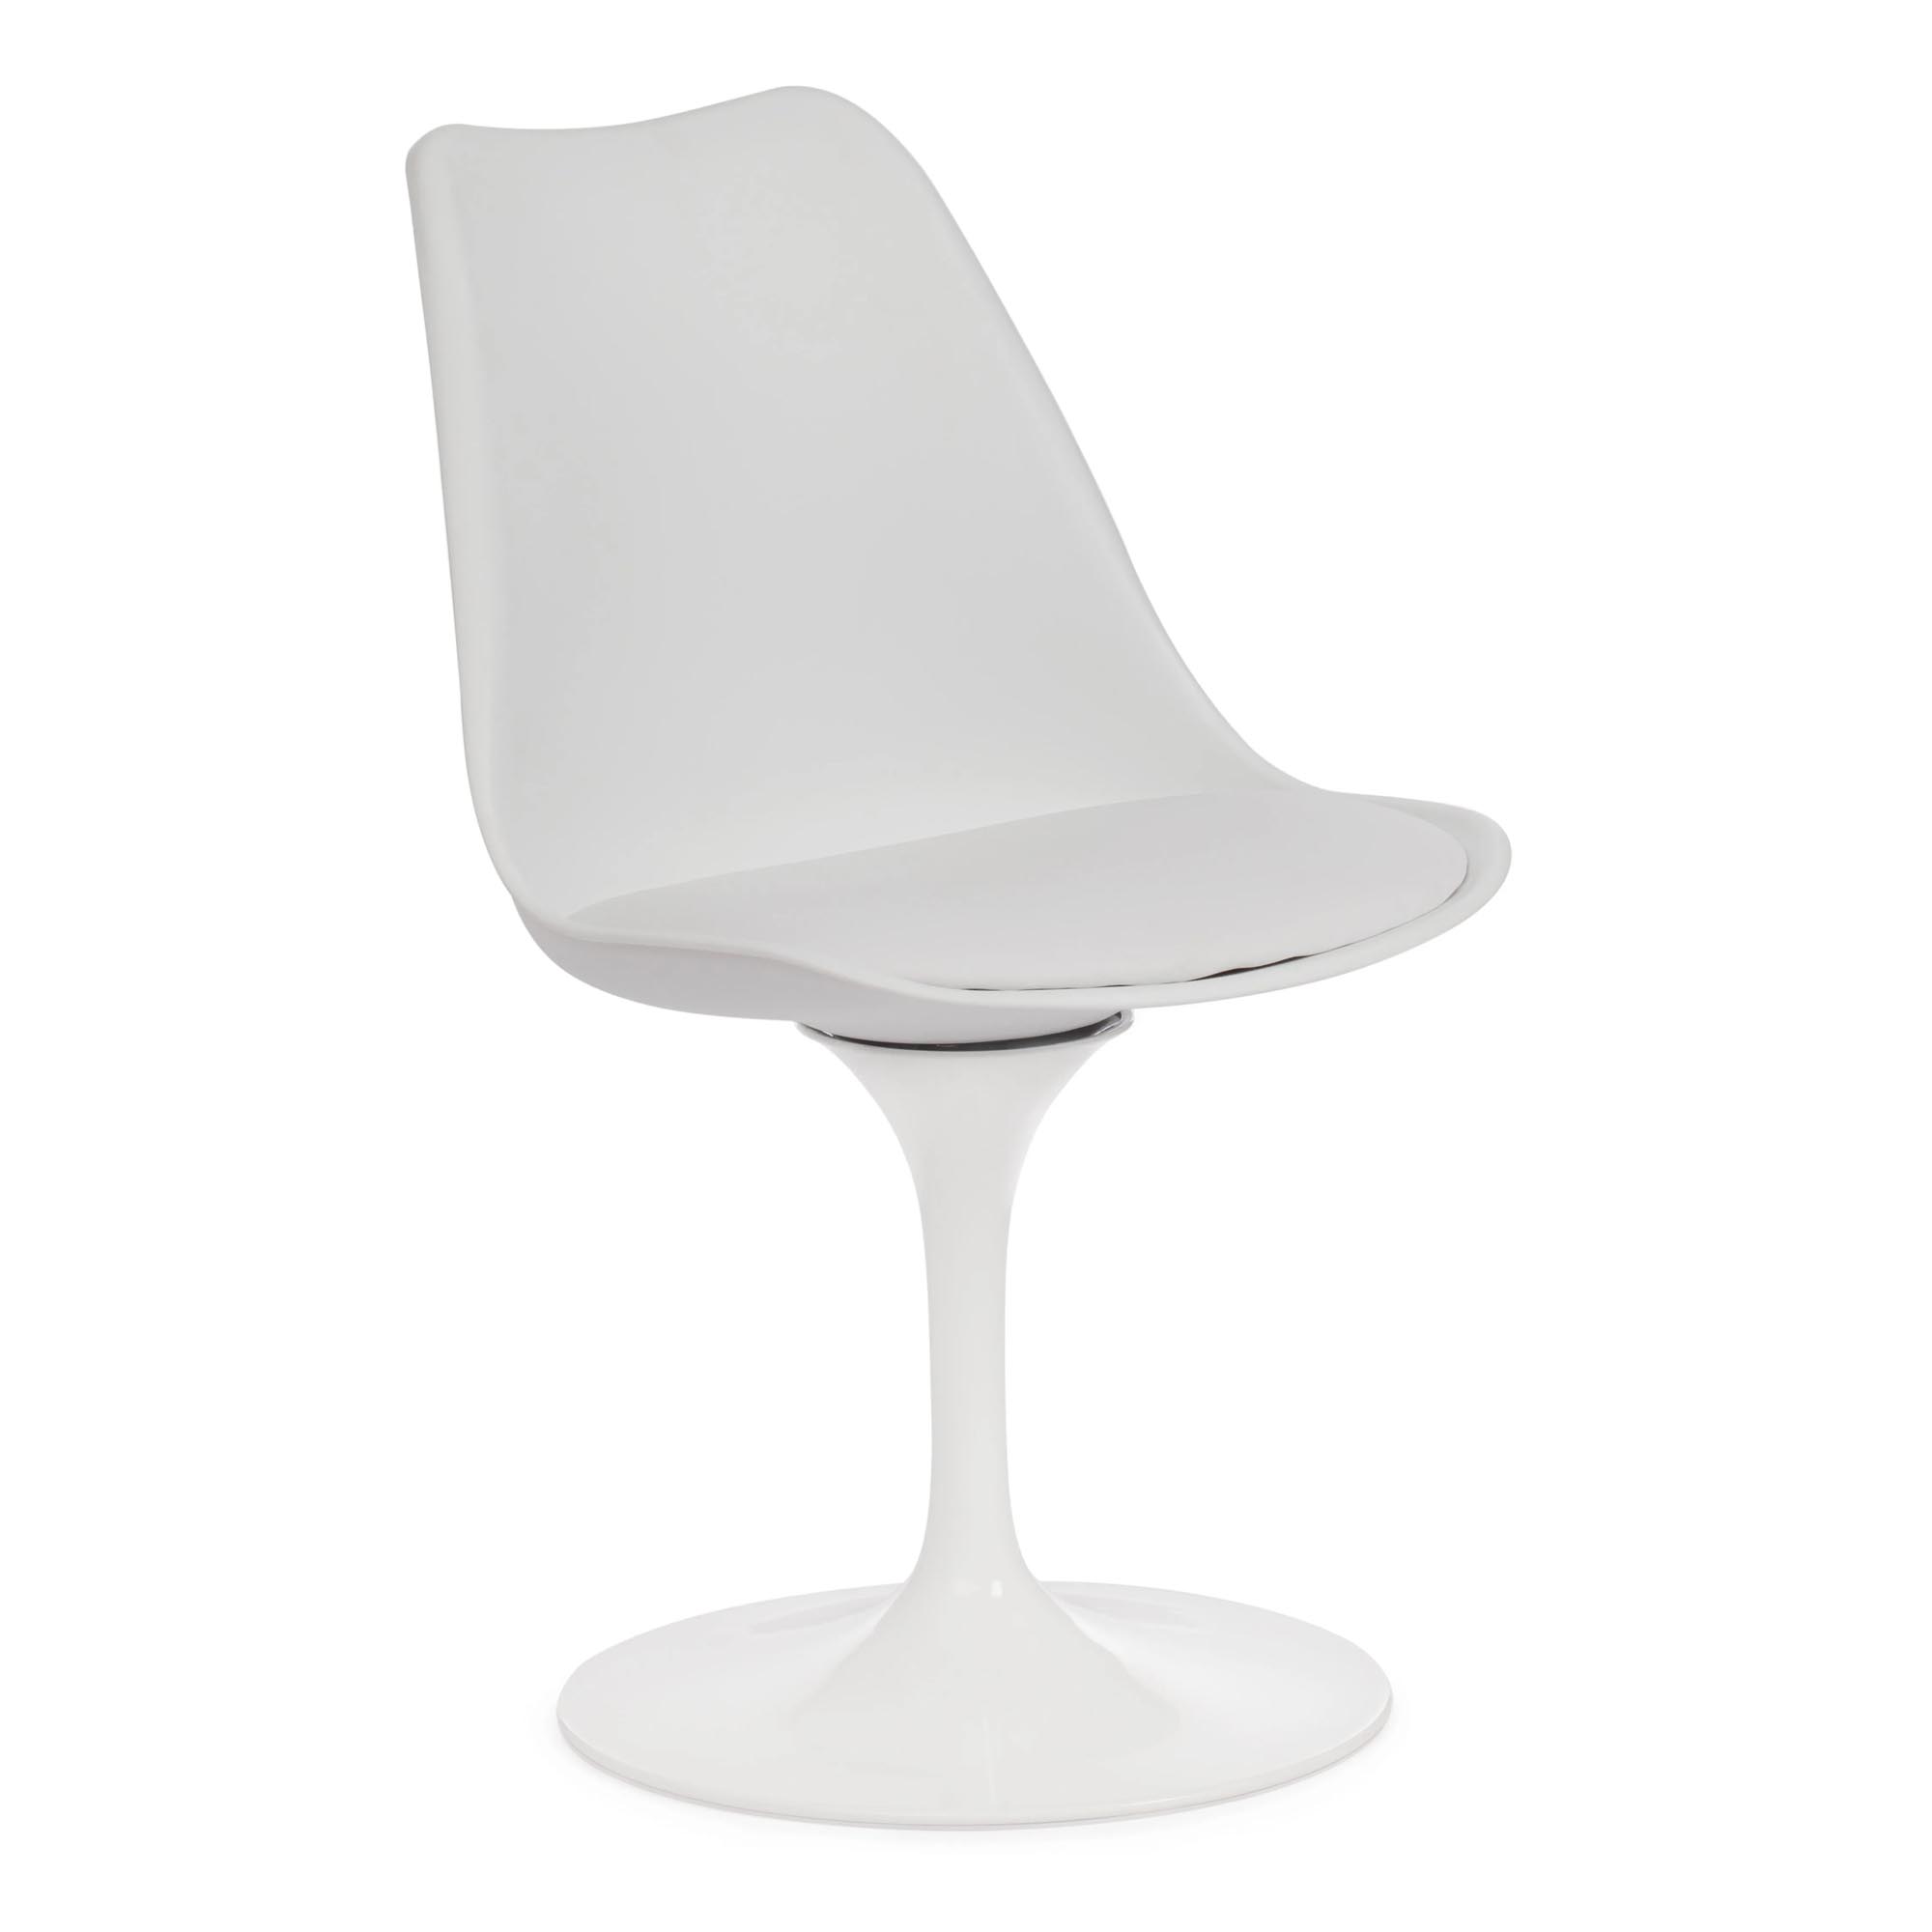 постмодернизированная люстра с кожаным ремешком дизайнерская стеклянная лампа для гостиной виллы кафе ресторана Стул TC Tulip fashion chair 55x48x81 см белый